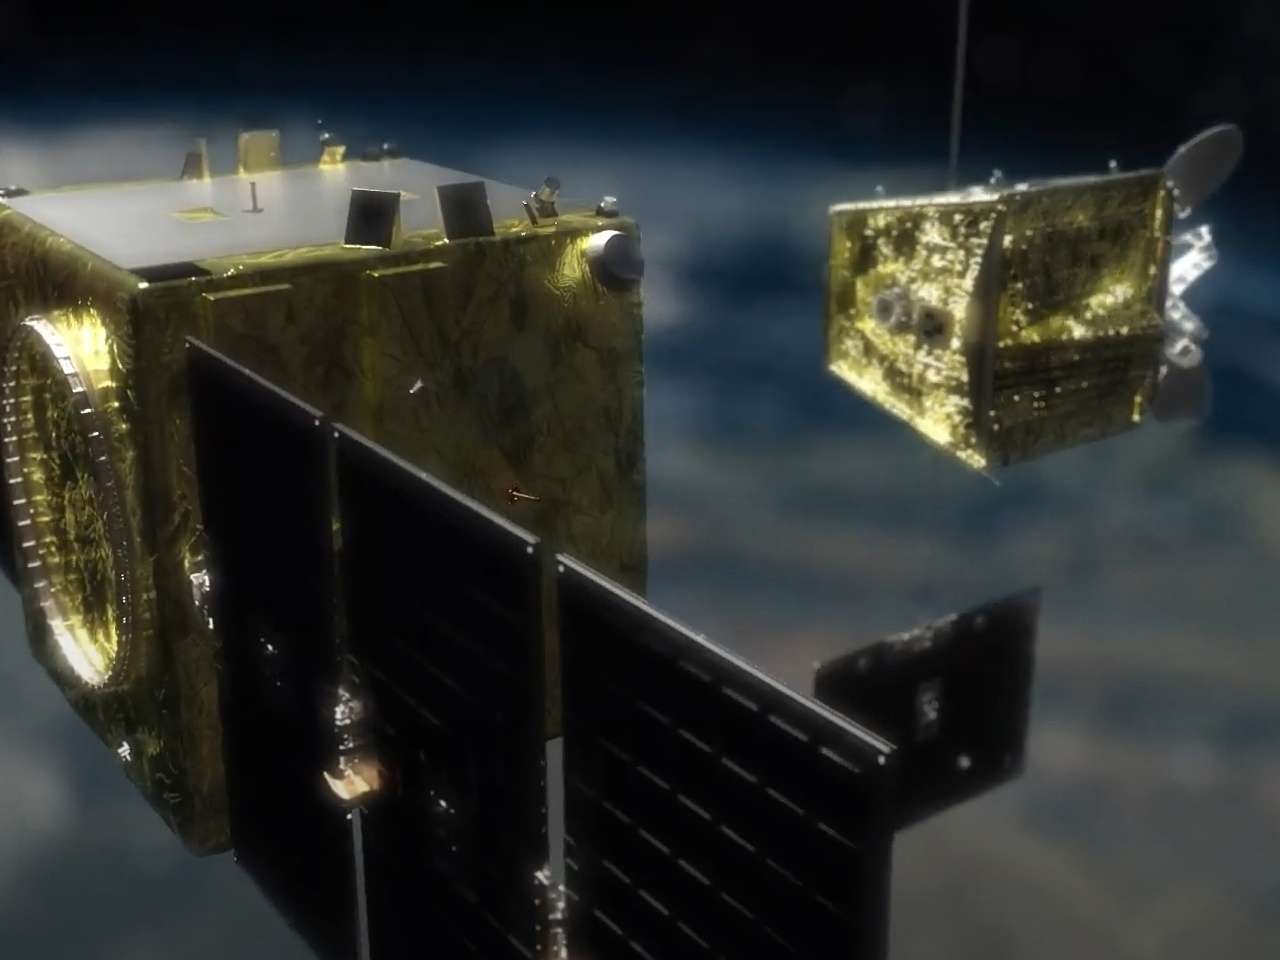 アストロスケール、運用終了の衛星を磁石で軌道離脱--Eutelsat OneWebと締結